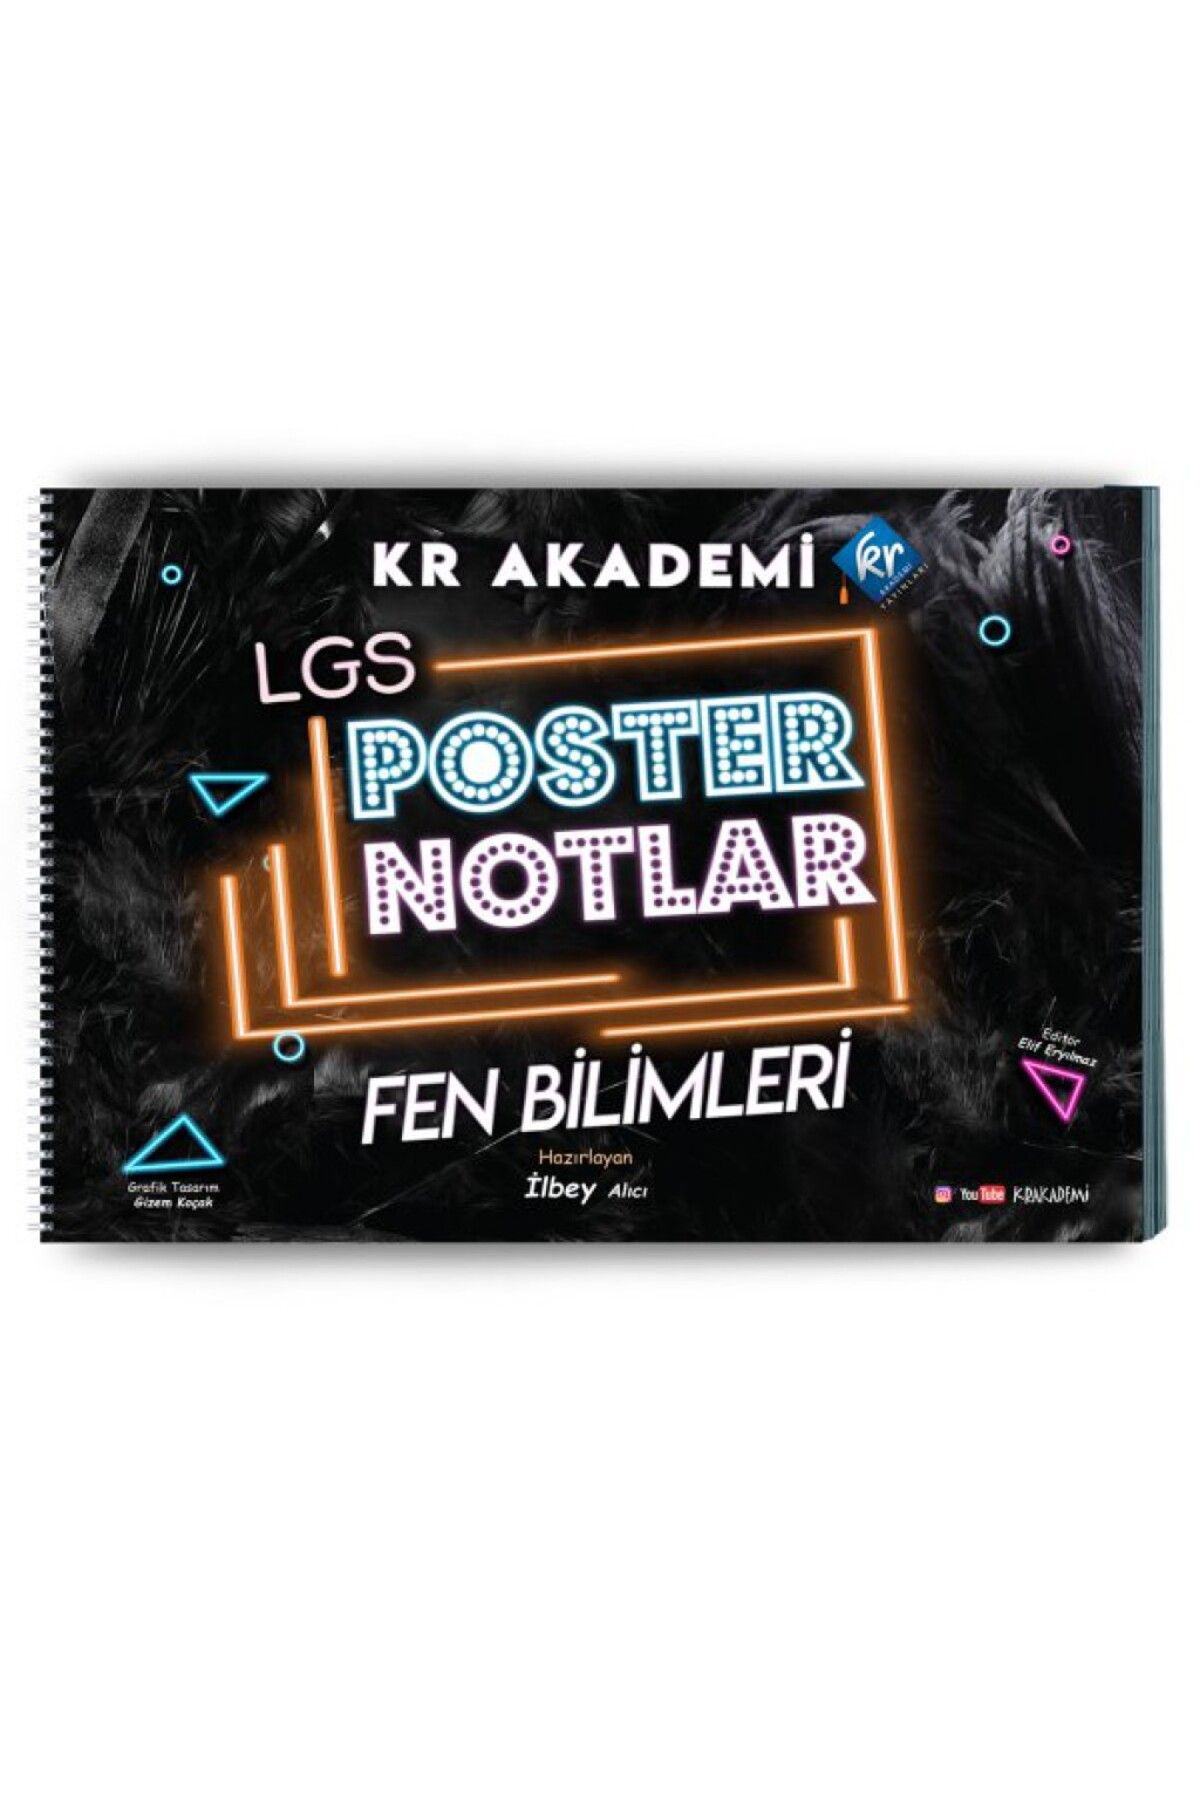 KR Akademi Yayınları Krakademi 8. Sınıf Fen Bilimleri Poster Notları